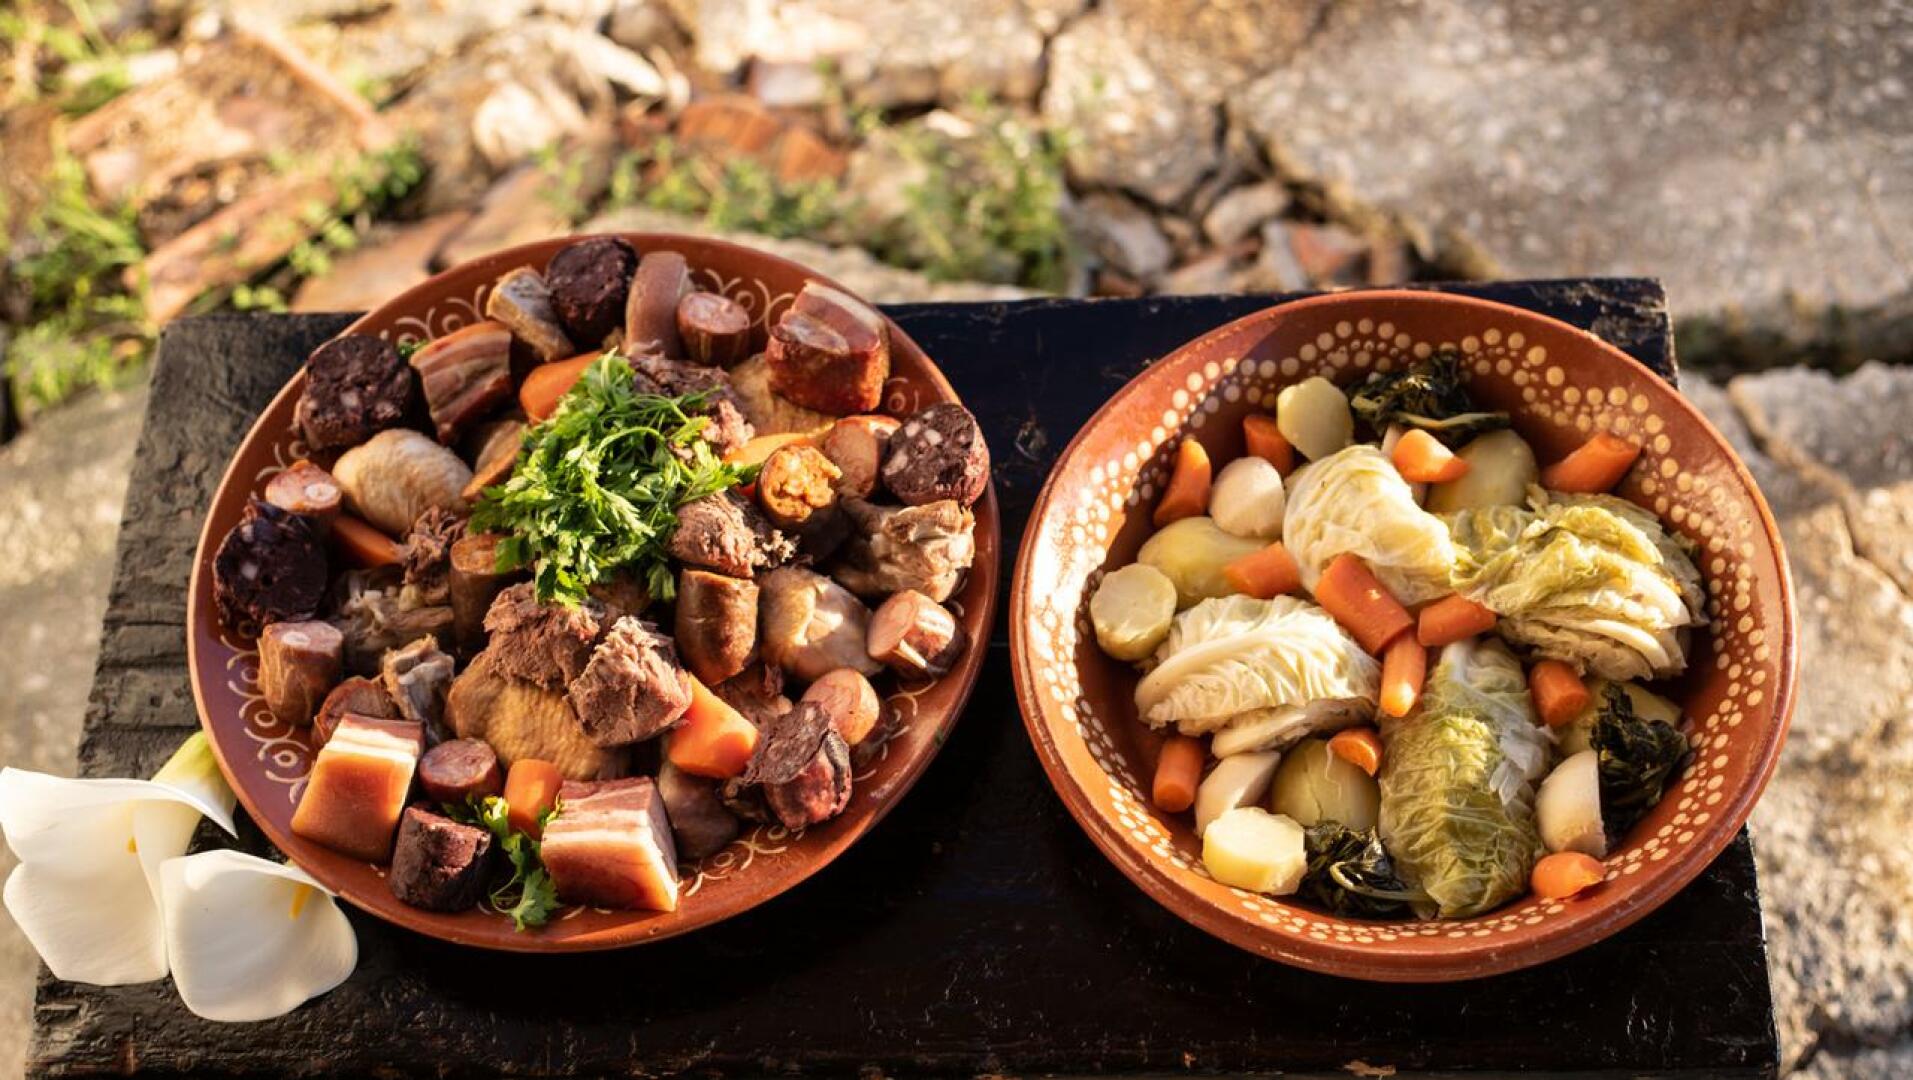 Perinteisessä portugalilaisessa lihamuhennoksessa on sian-, naudan- ja kananlihaa sekä makkaraa. Lisukkeeksi tarjoillaan vihanneksia toiselta lautaselta.